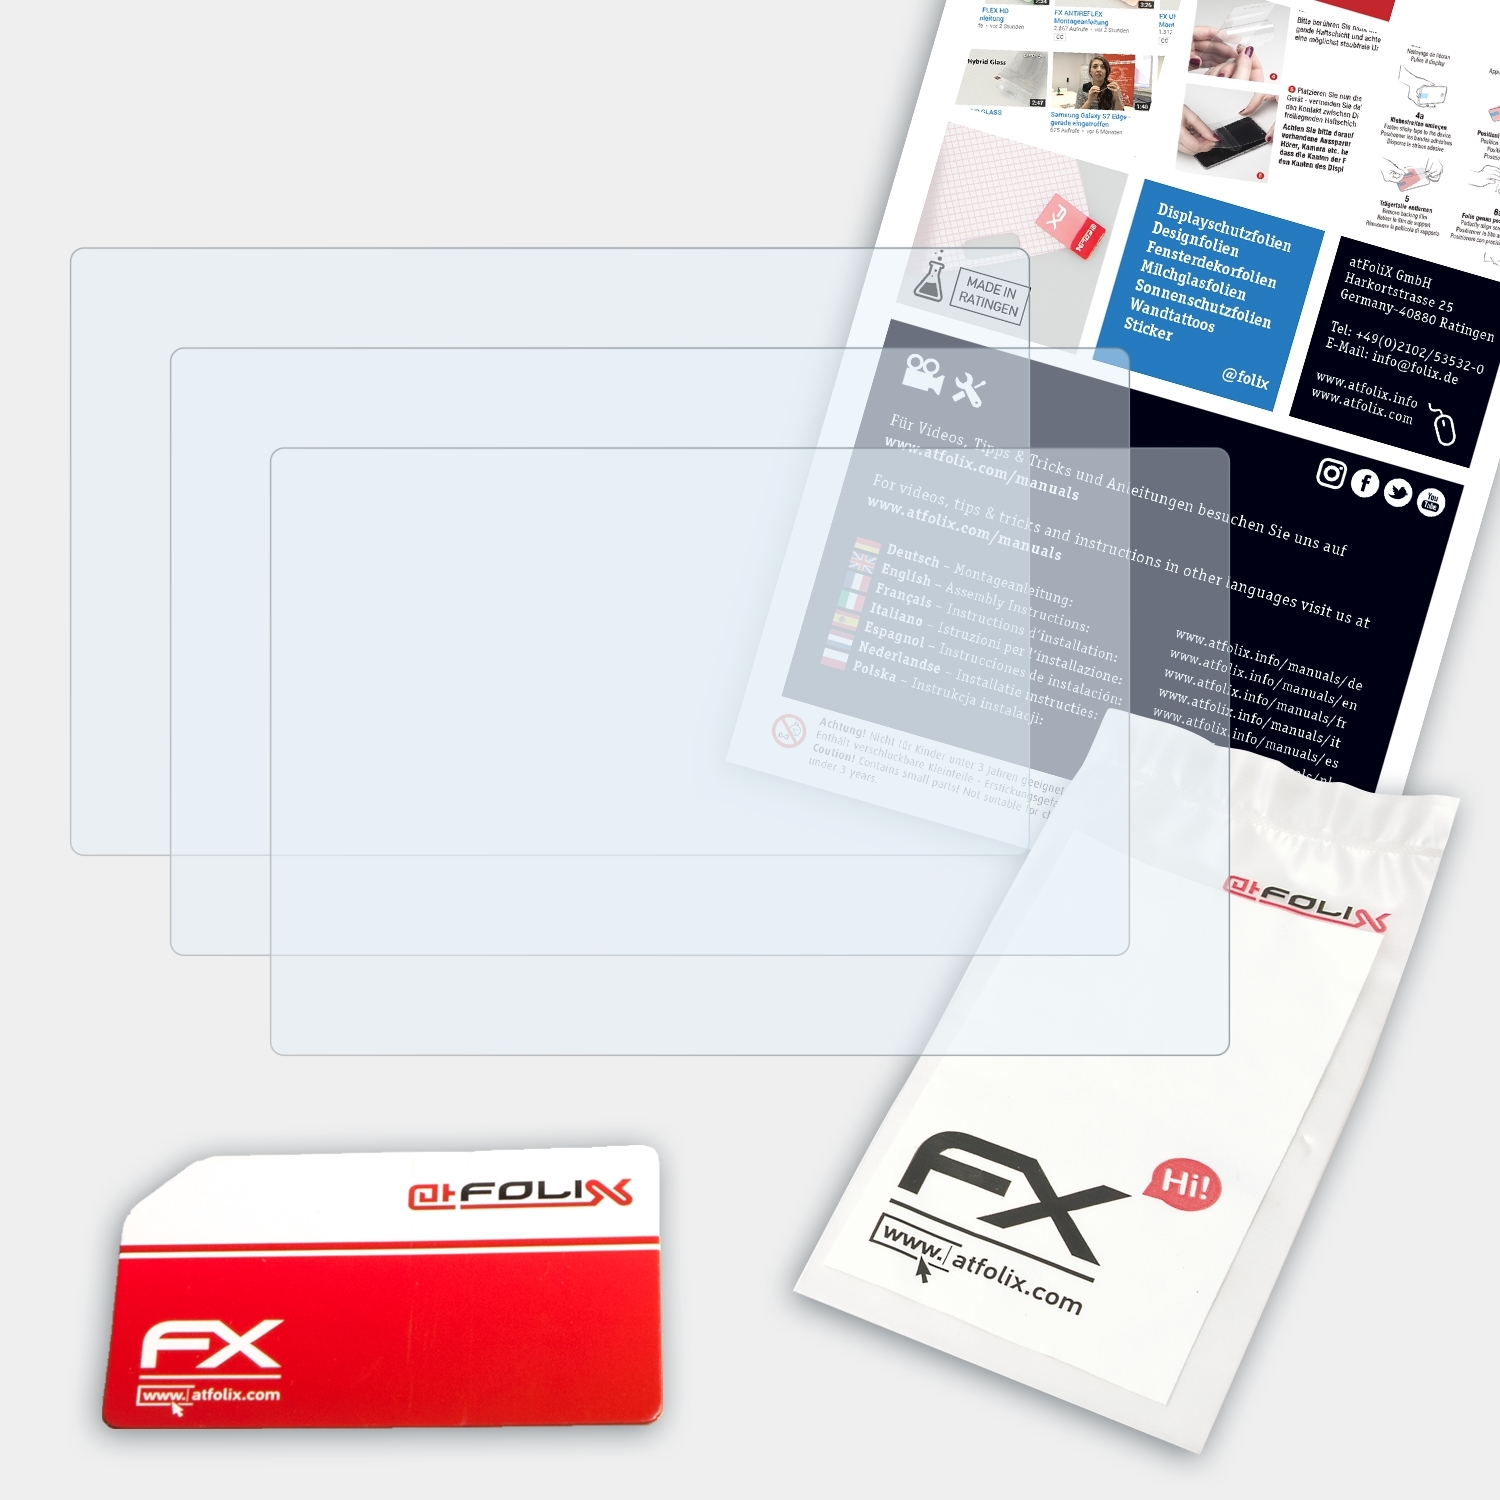 Lumix 3x FX-Clear DC-GX880) Panasonic ATFOLIX Displayschutz(für